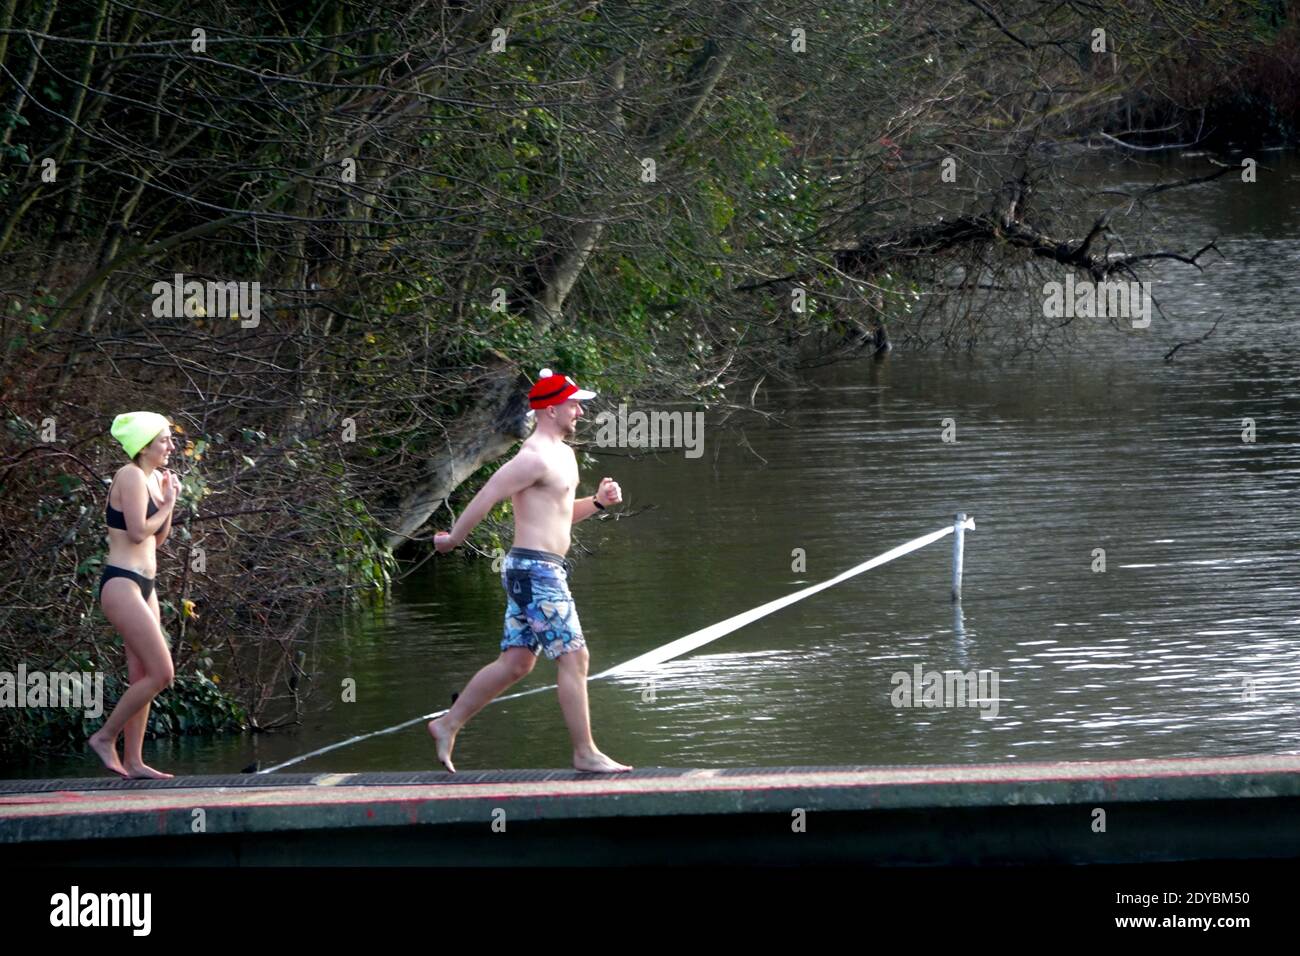 Deux nageurs descendent la jetée Hampstead Men's Pond pour un événement annuel de natation de Noël le jour de Noël 2020. Un homme portant un chapeau de père noël sautant la jetée, suivi d'une jeune femme qui frite le maillot. Banque D'Images